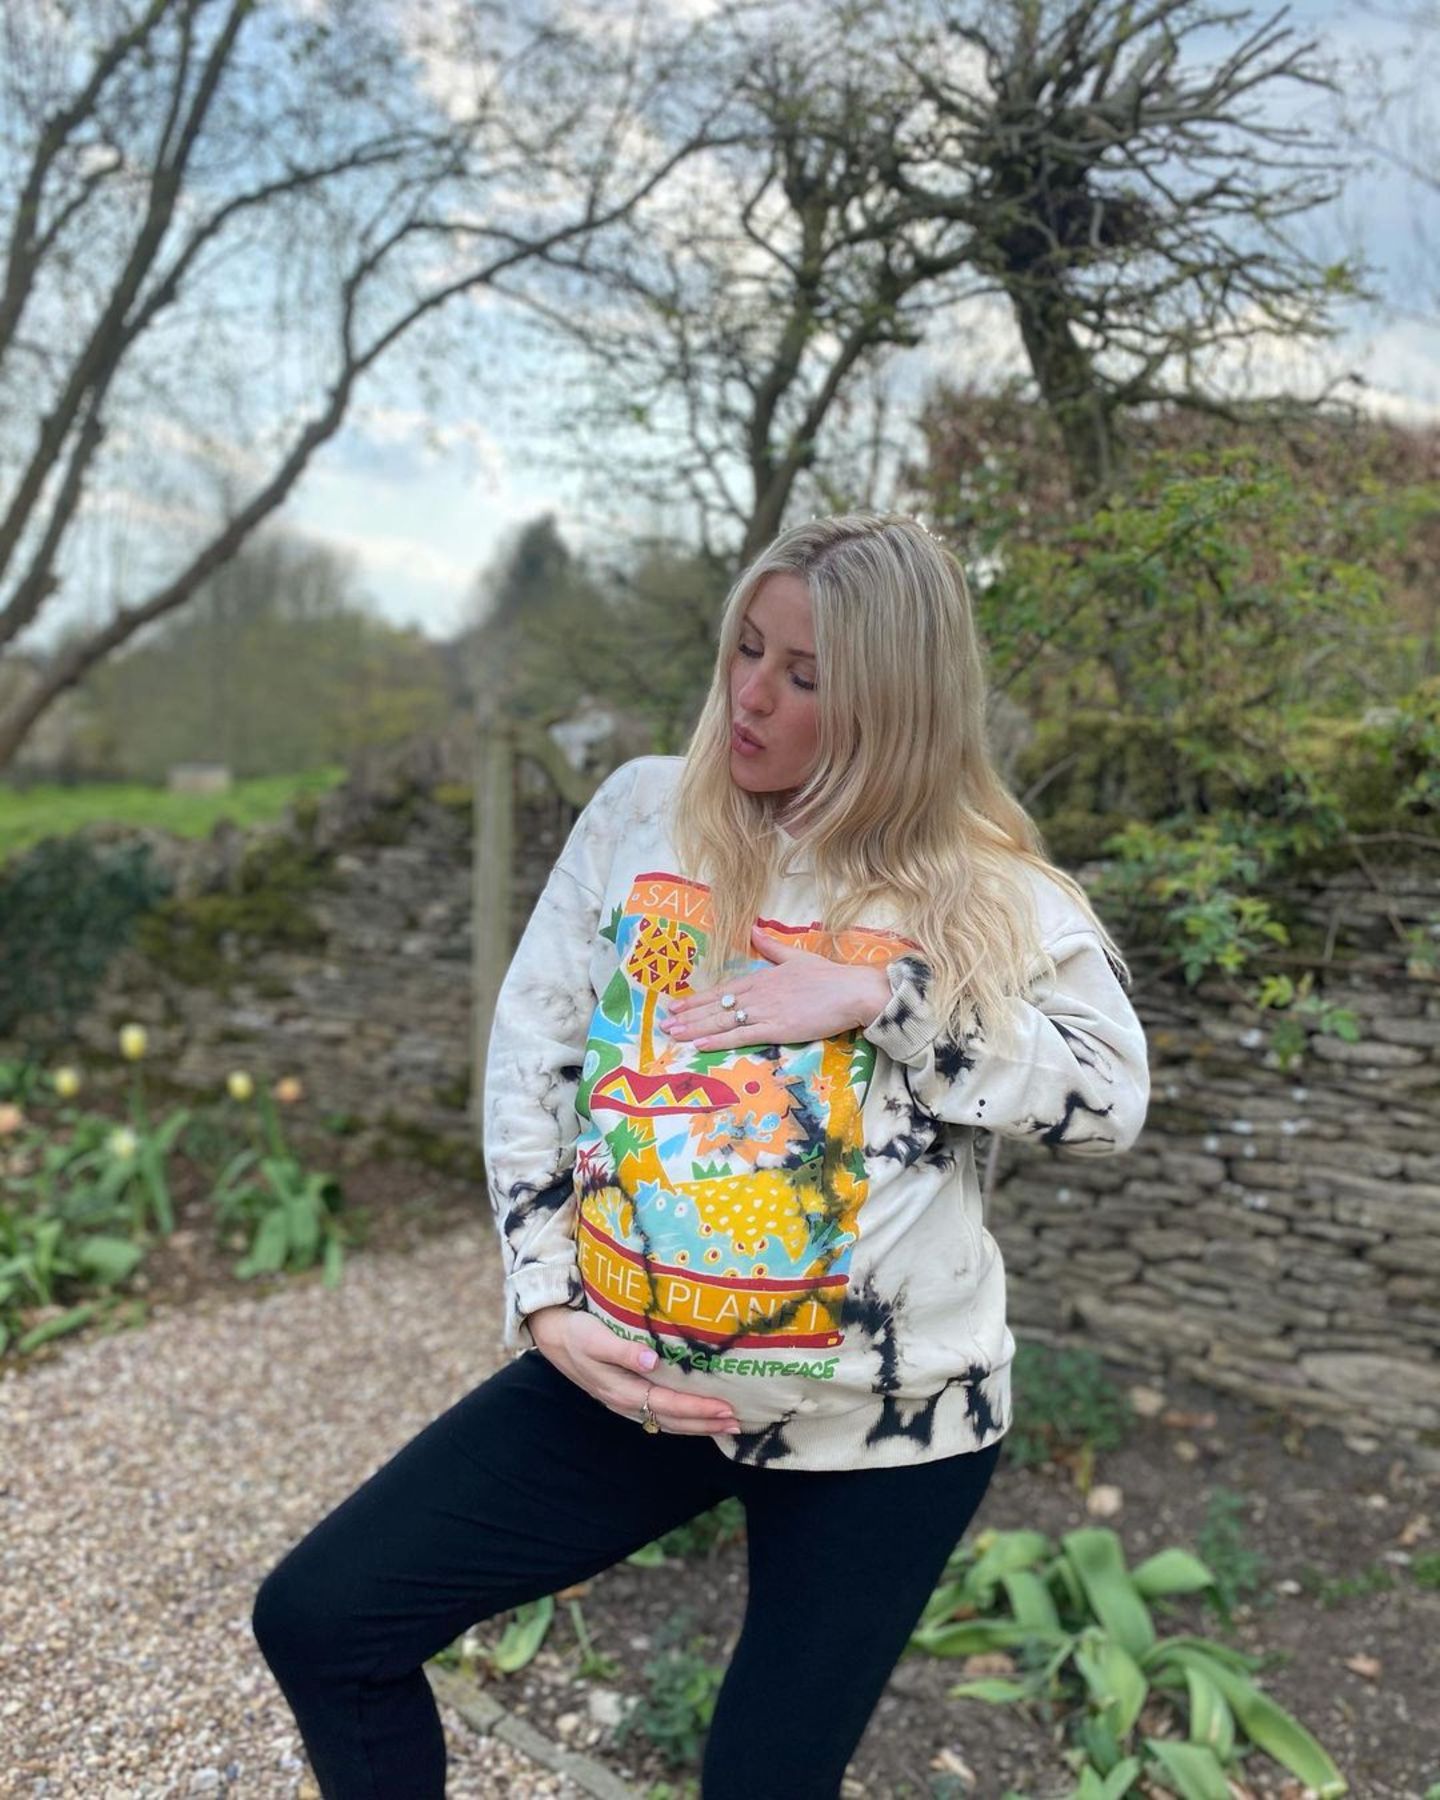 Ellie Goulding erwartet mit Ehemann Caspar Jopling ihr erstes Kind. Zum "World Earth Day" setzt sie ihre groß gewordene Babykugel im Garten in Szene. In den ersten Monaten der Schwangerschaft hatte die Sängerin diese geheim gehalten – jetzt dürfen ihr Glück alle teilen! 